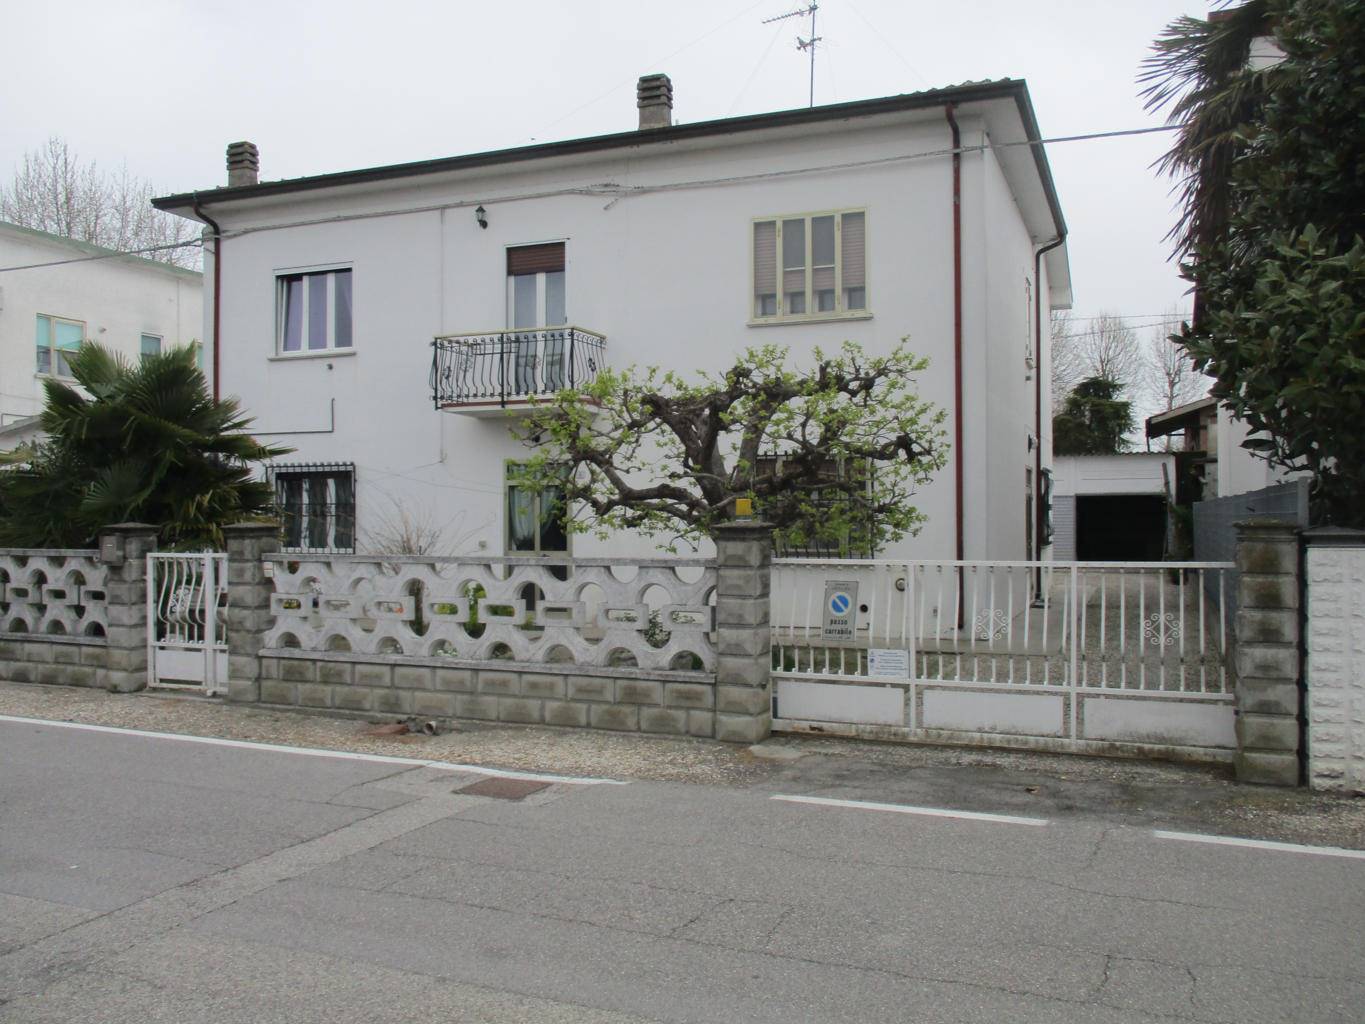 Casa singola in vendita a Ostellato Ferrara Rovereto